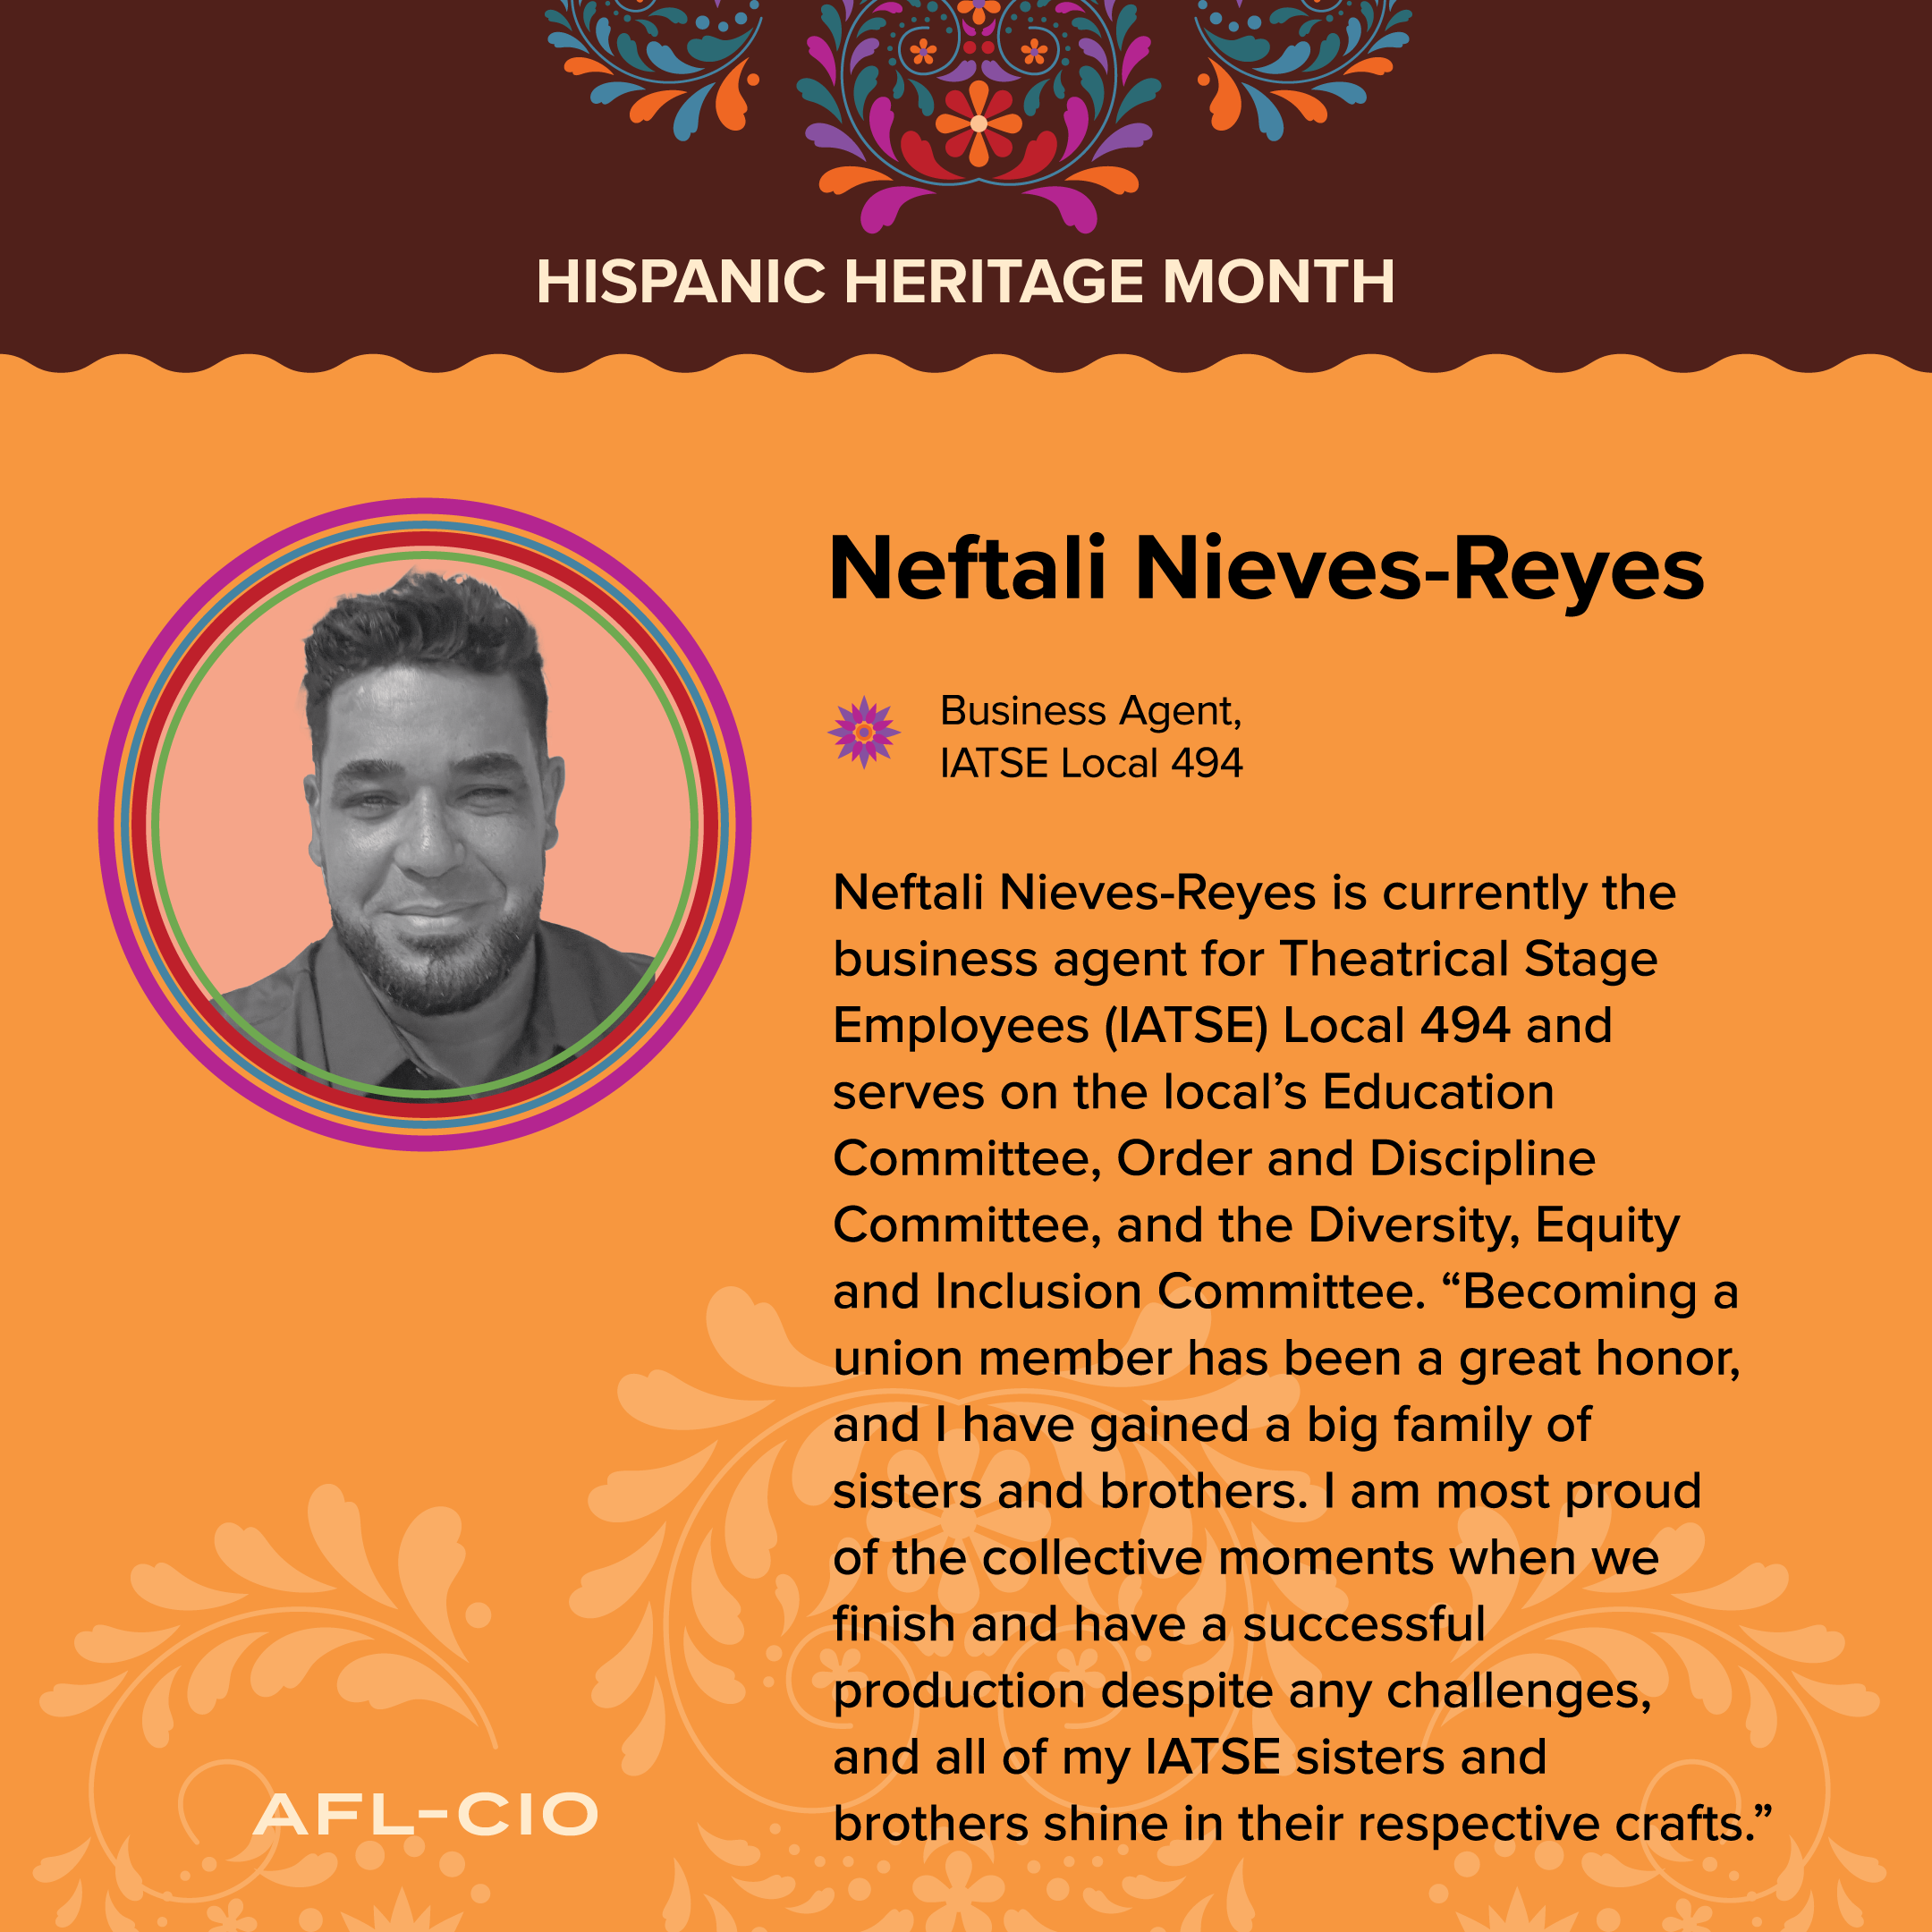 Neftali Nieves-Reyes